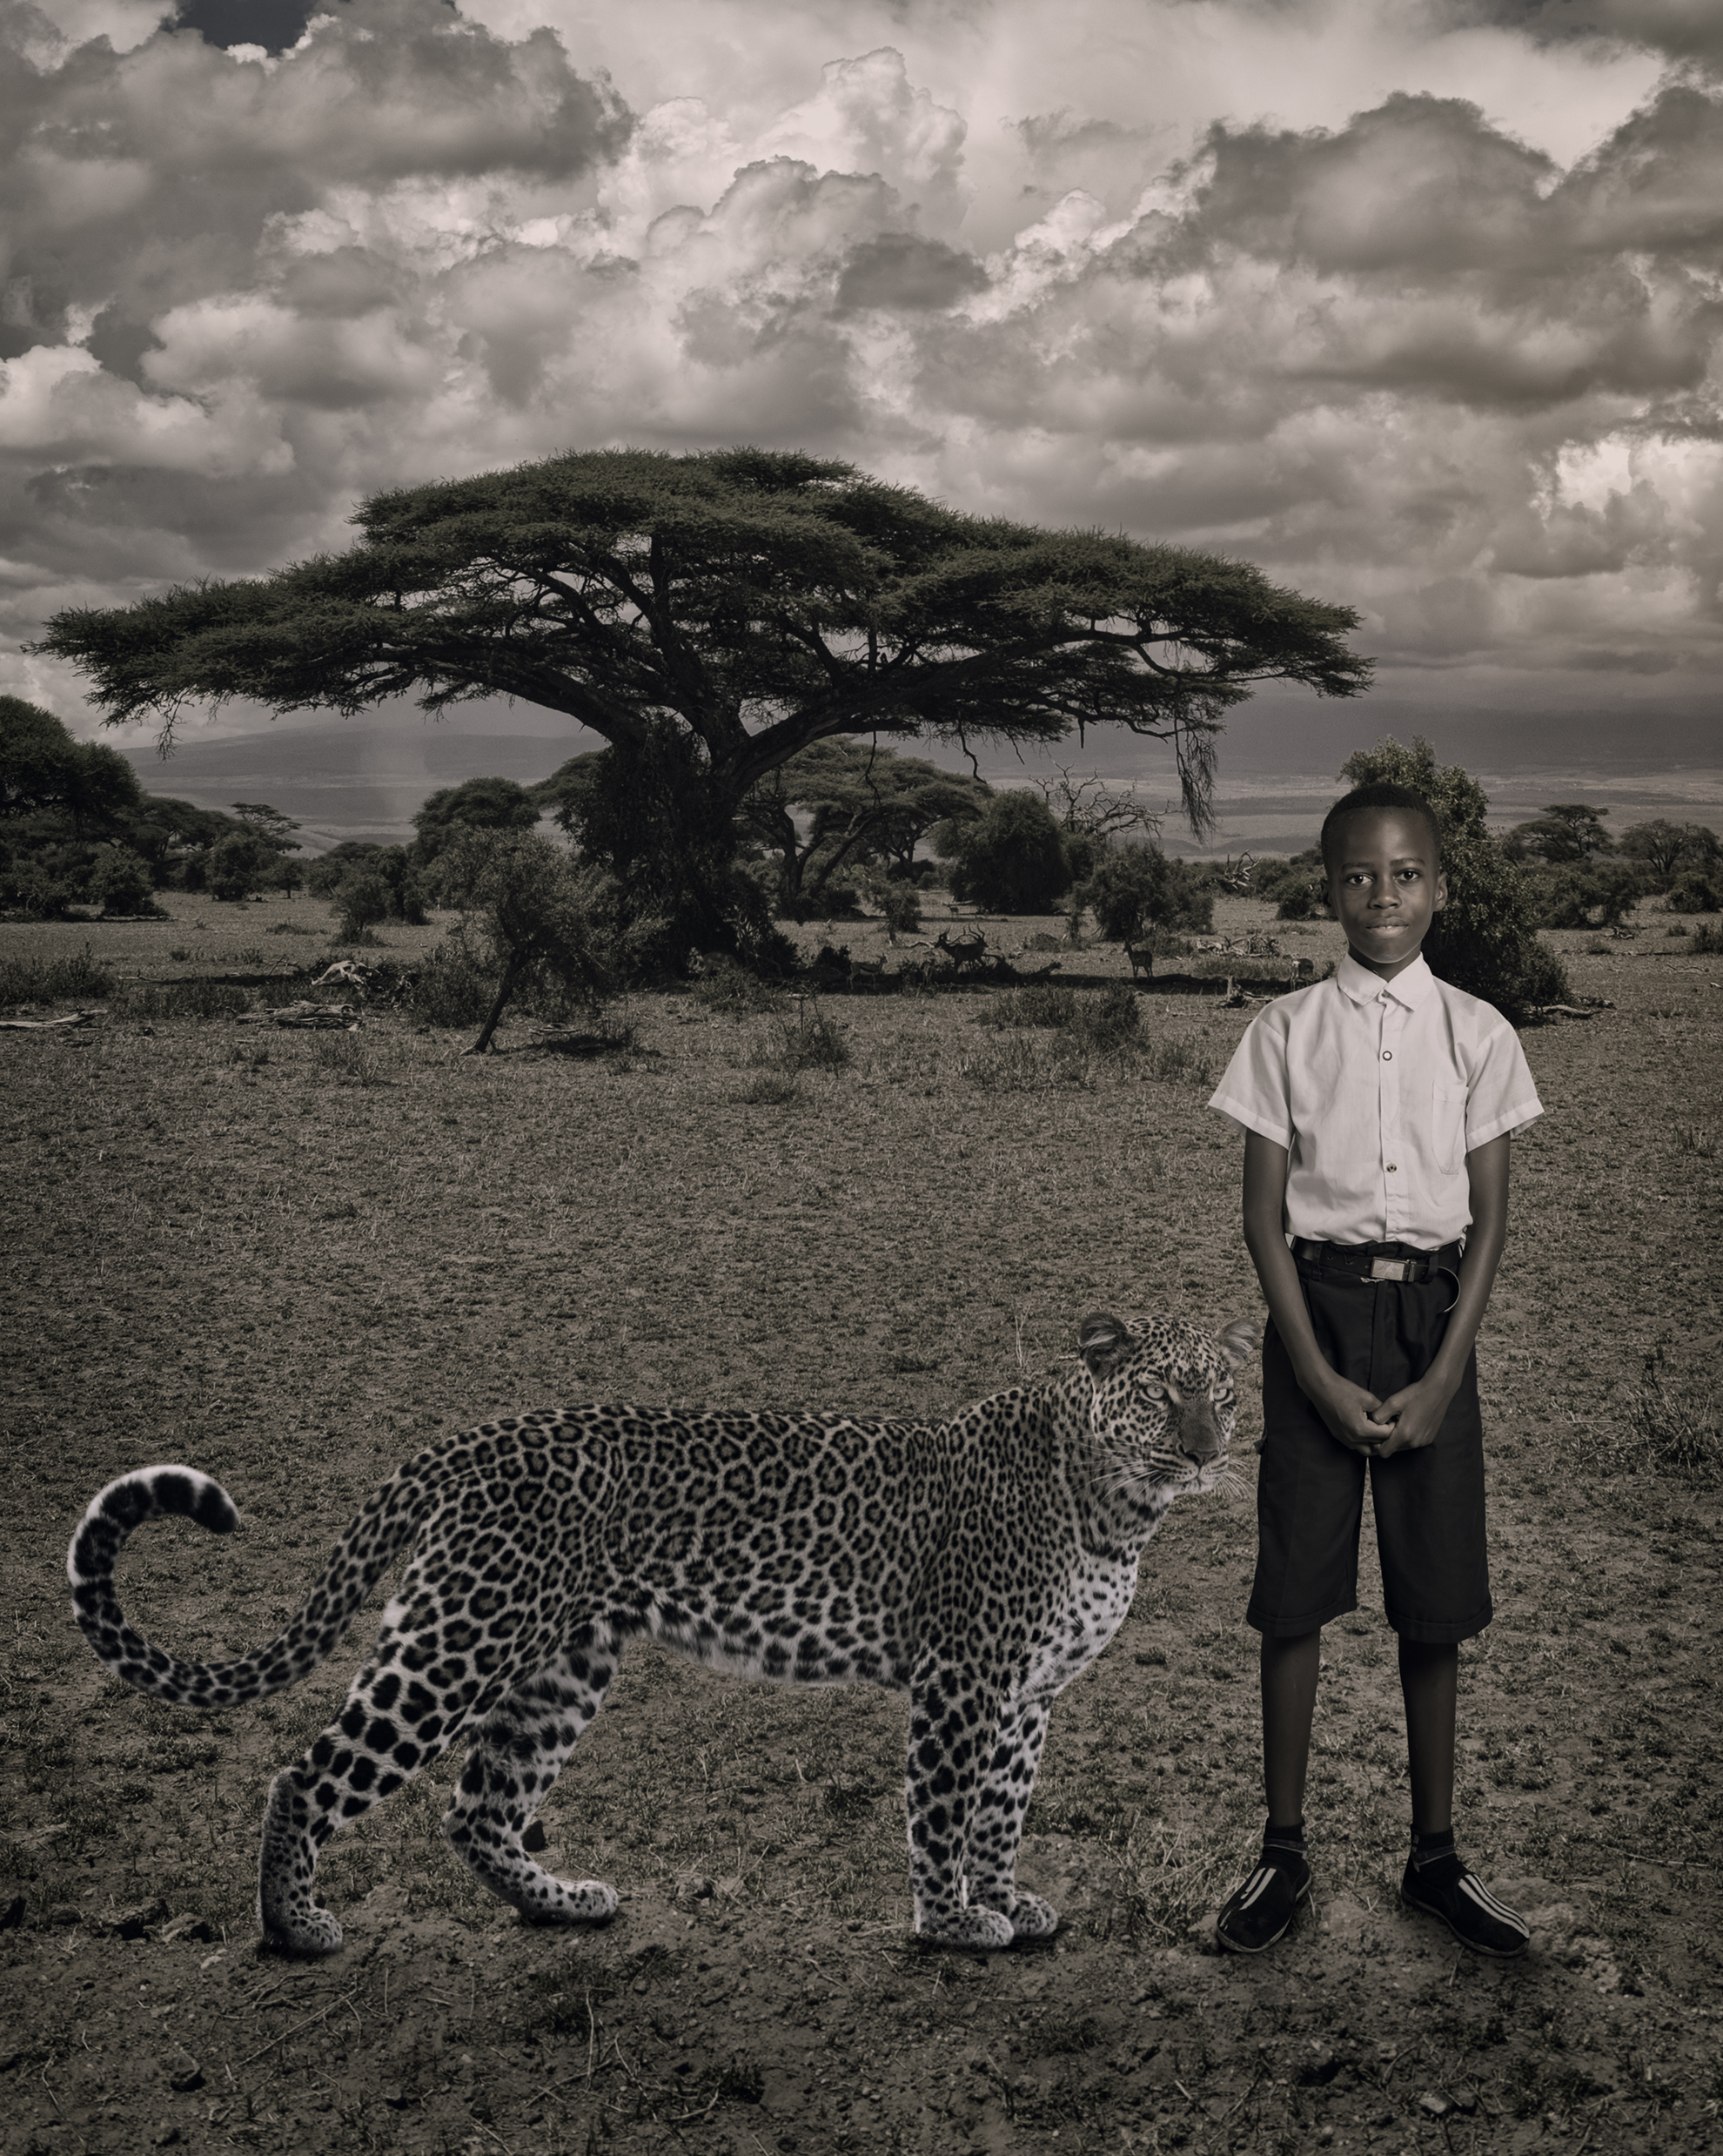 Tender Space Between Leopard and Kid